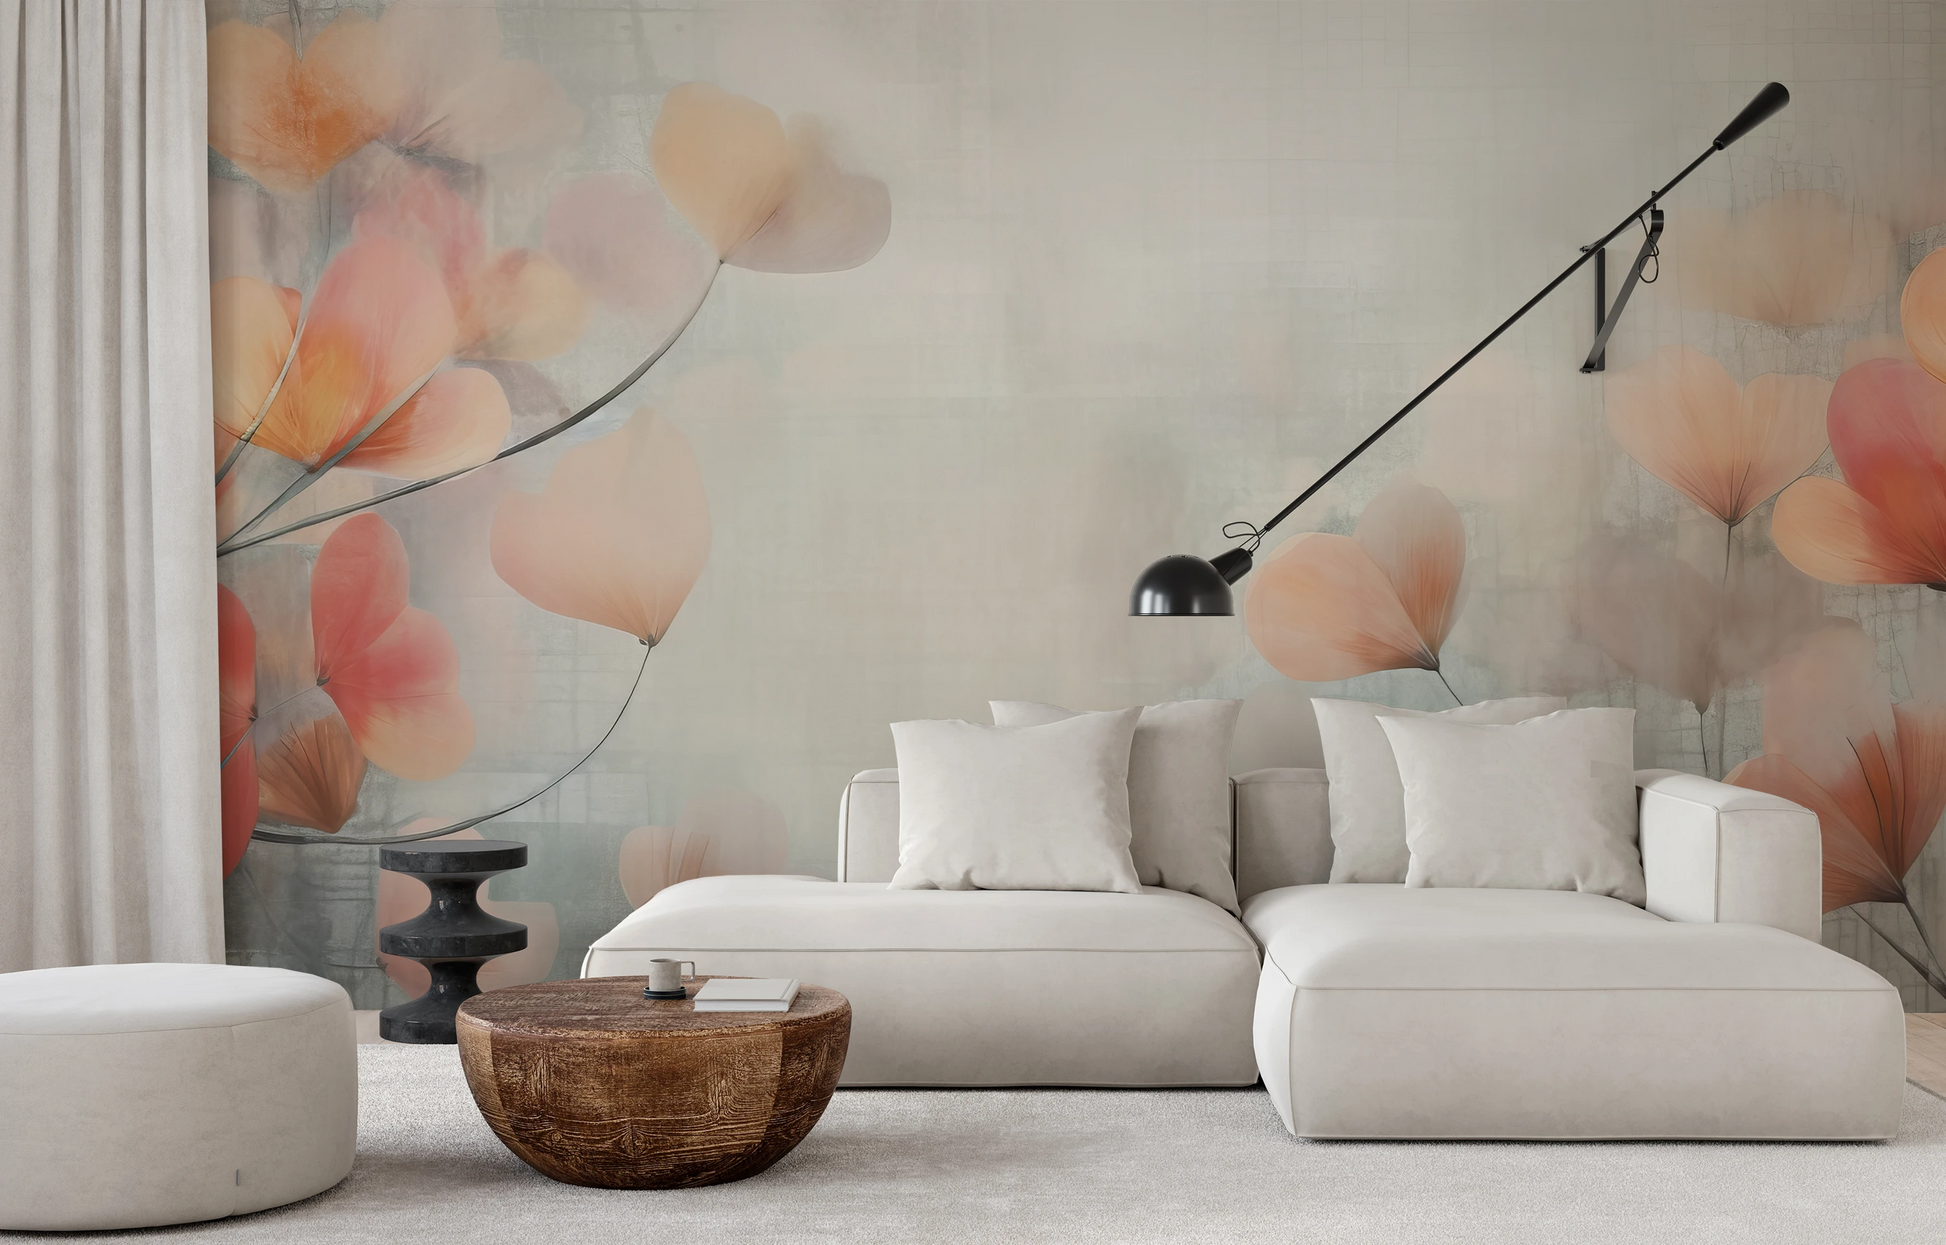 Wzór fototapety o nazwie Abstract Blossom Art pokazanej w kontekście pomieszczenia.